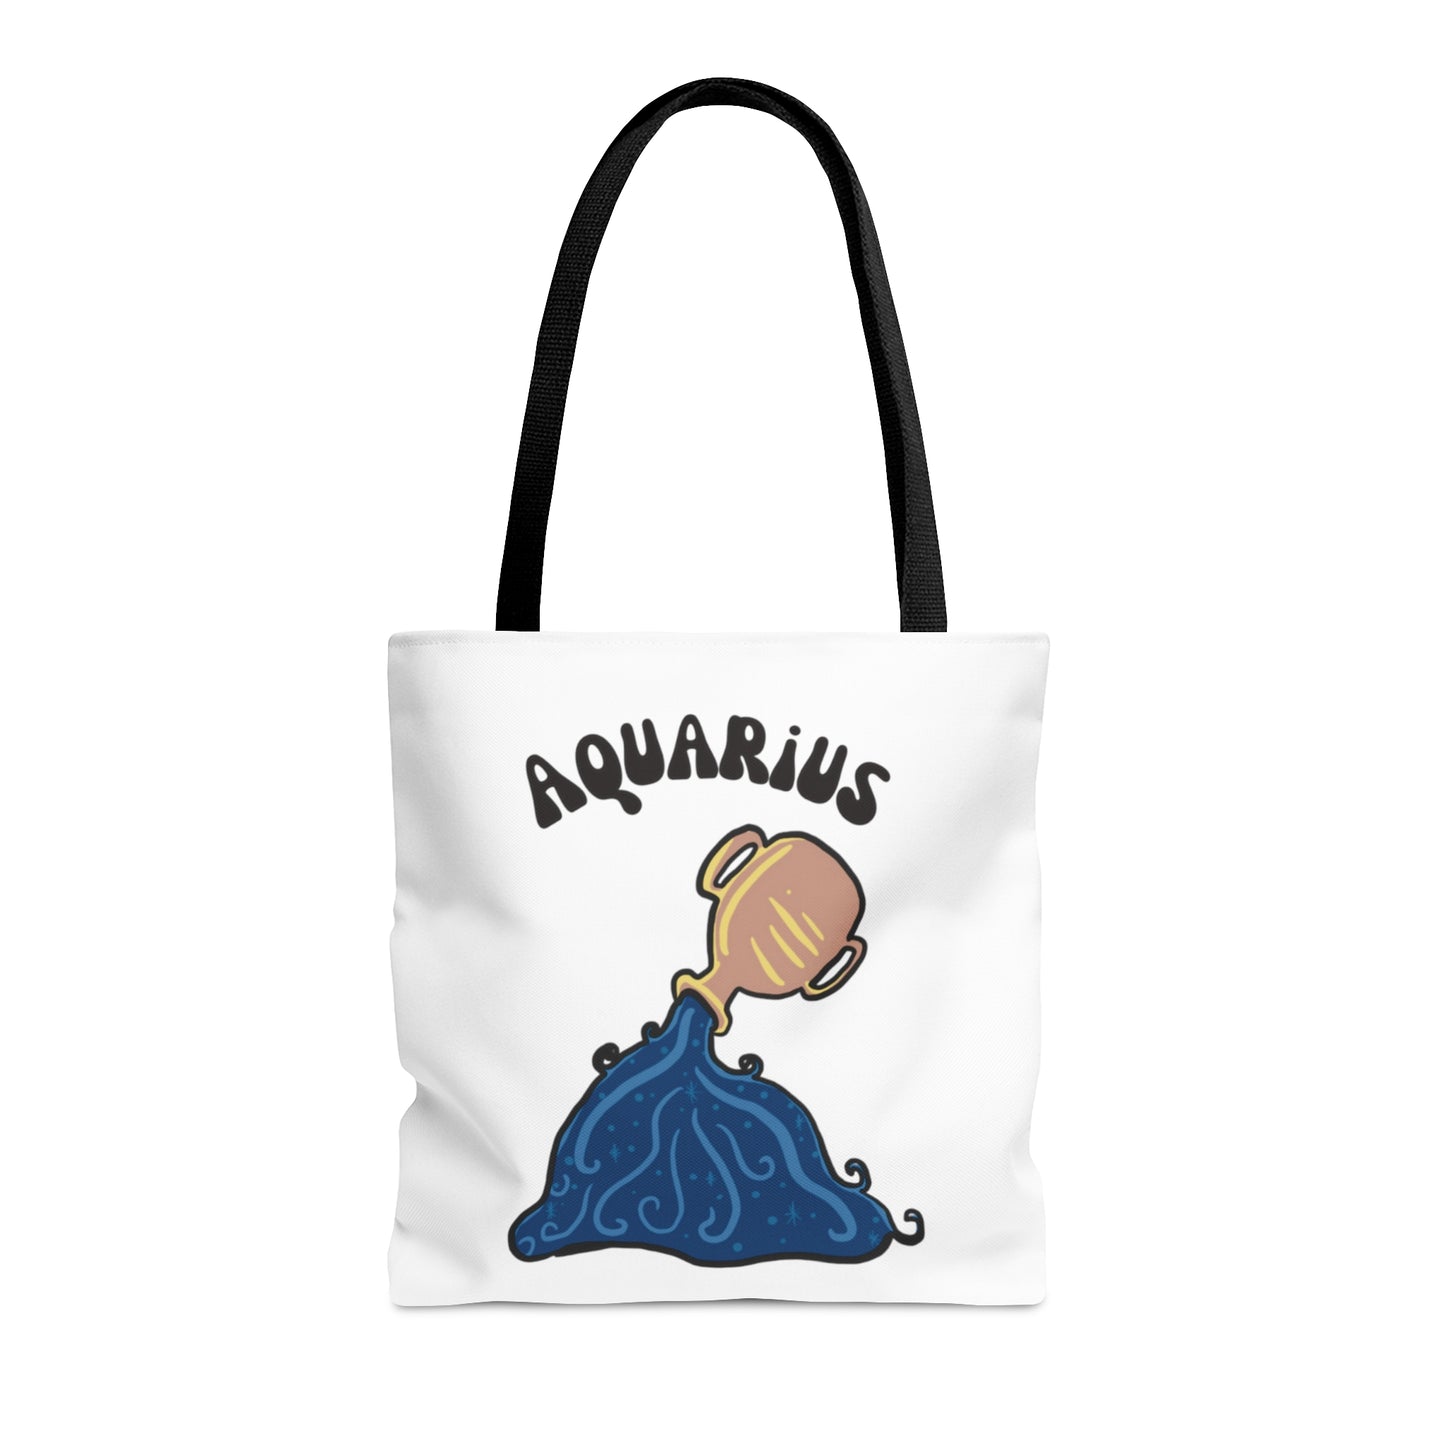 Aquarius Tote Bag